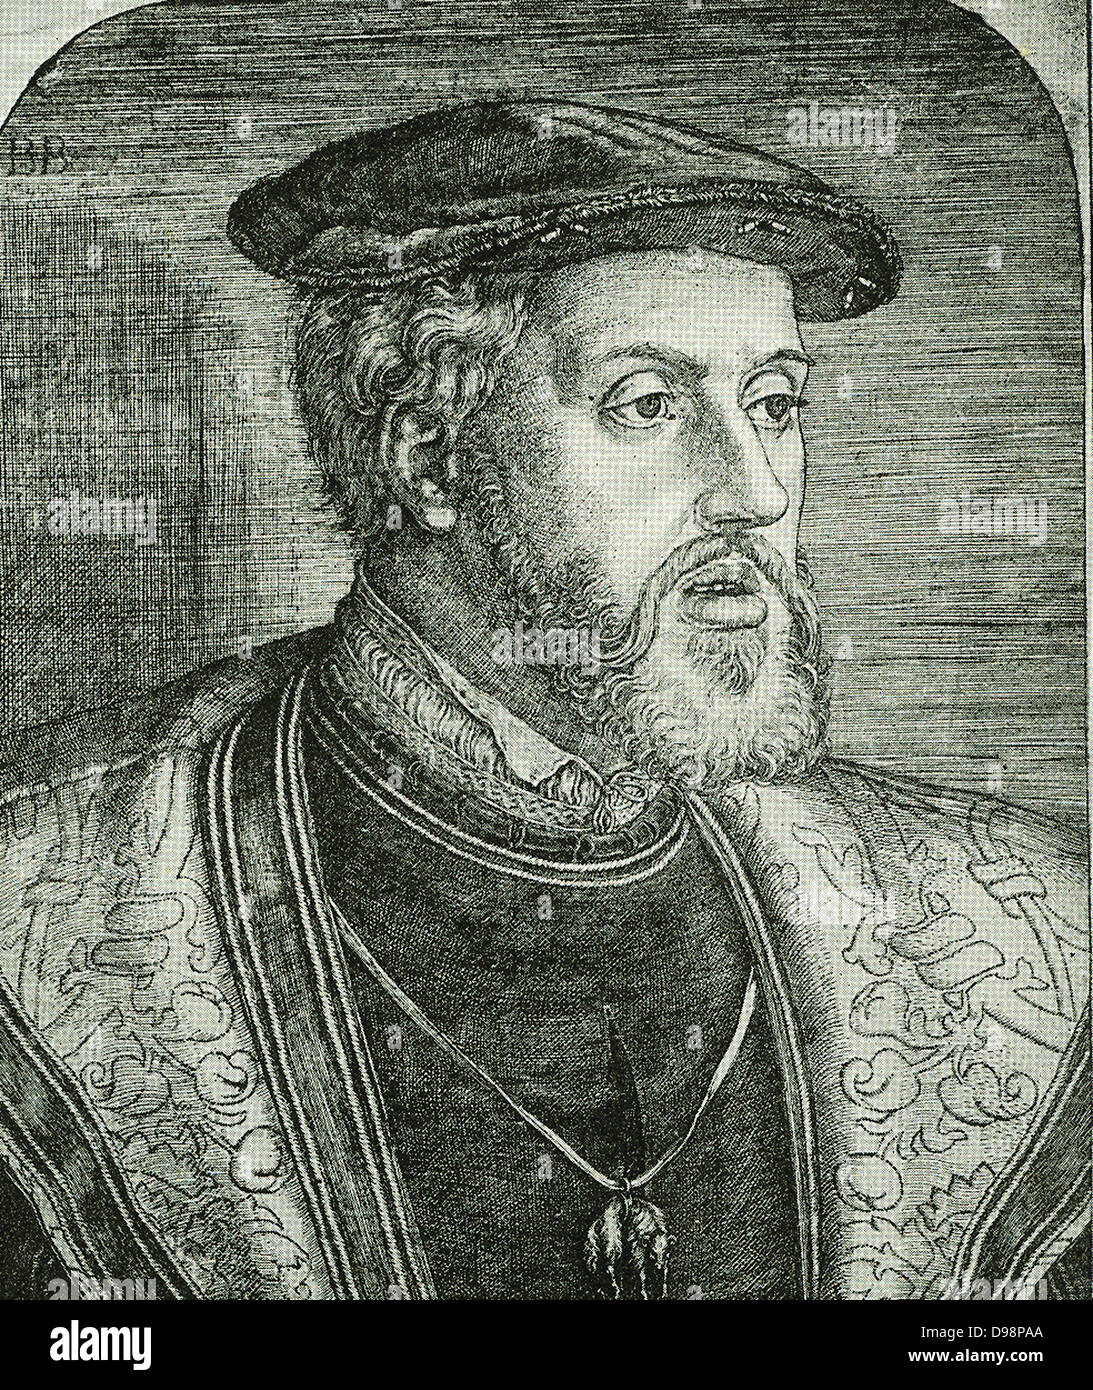 La réforme - Charles V peu avant 1550 une combinaison de circonstances united toutes les dix-sept provinces des Pays-Bas sous Charles Quint, un Néerlandais de naissance, qui était également l'empereur allemand et Roi d'Espagne. Un grand nombre de Néerlandais ont péri pour la foi réformée durant son règne. En 1555 il démissionna de son pouvoir en faveur de son fils Philippe II. Banque D'Images